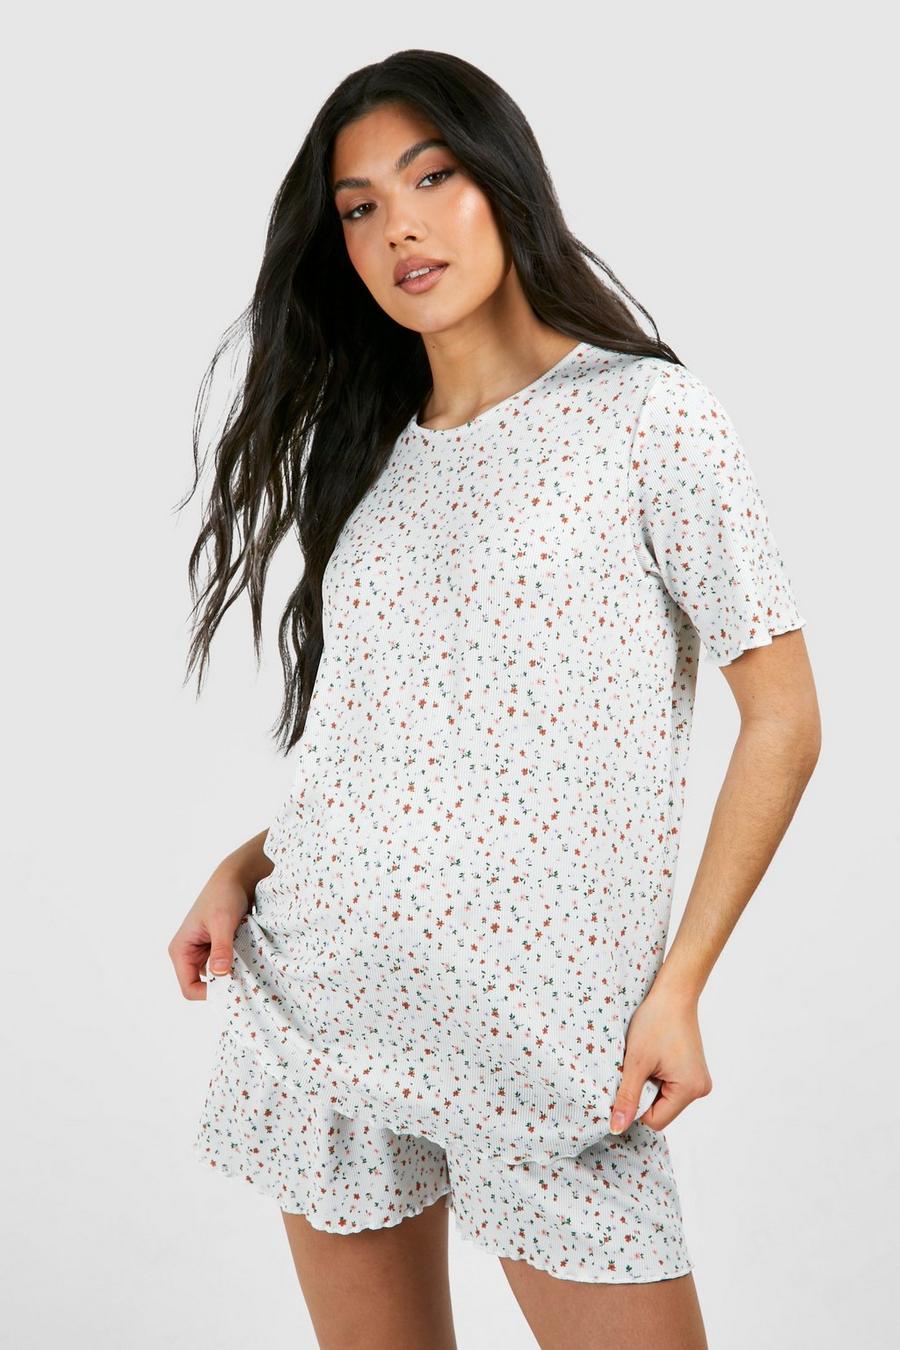 Maternity Pajamas, Nursing Pajamas & Sets